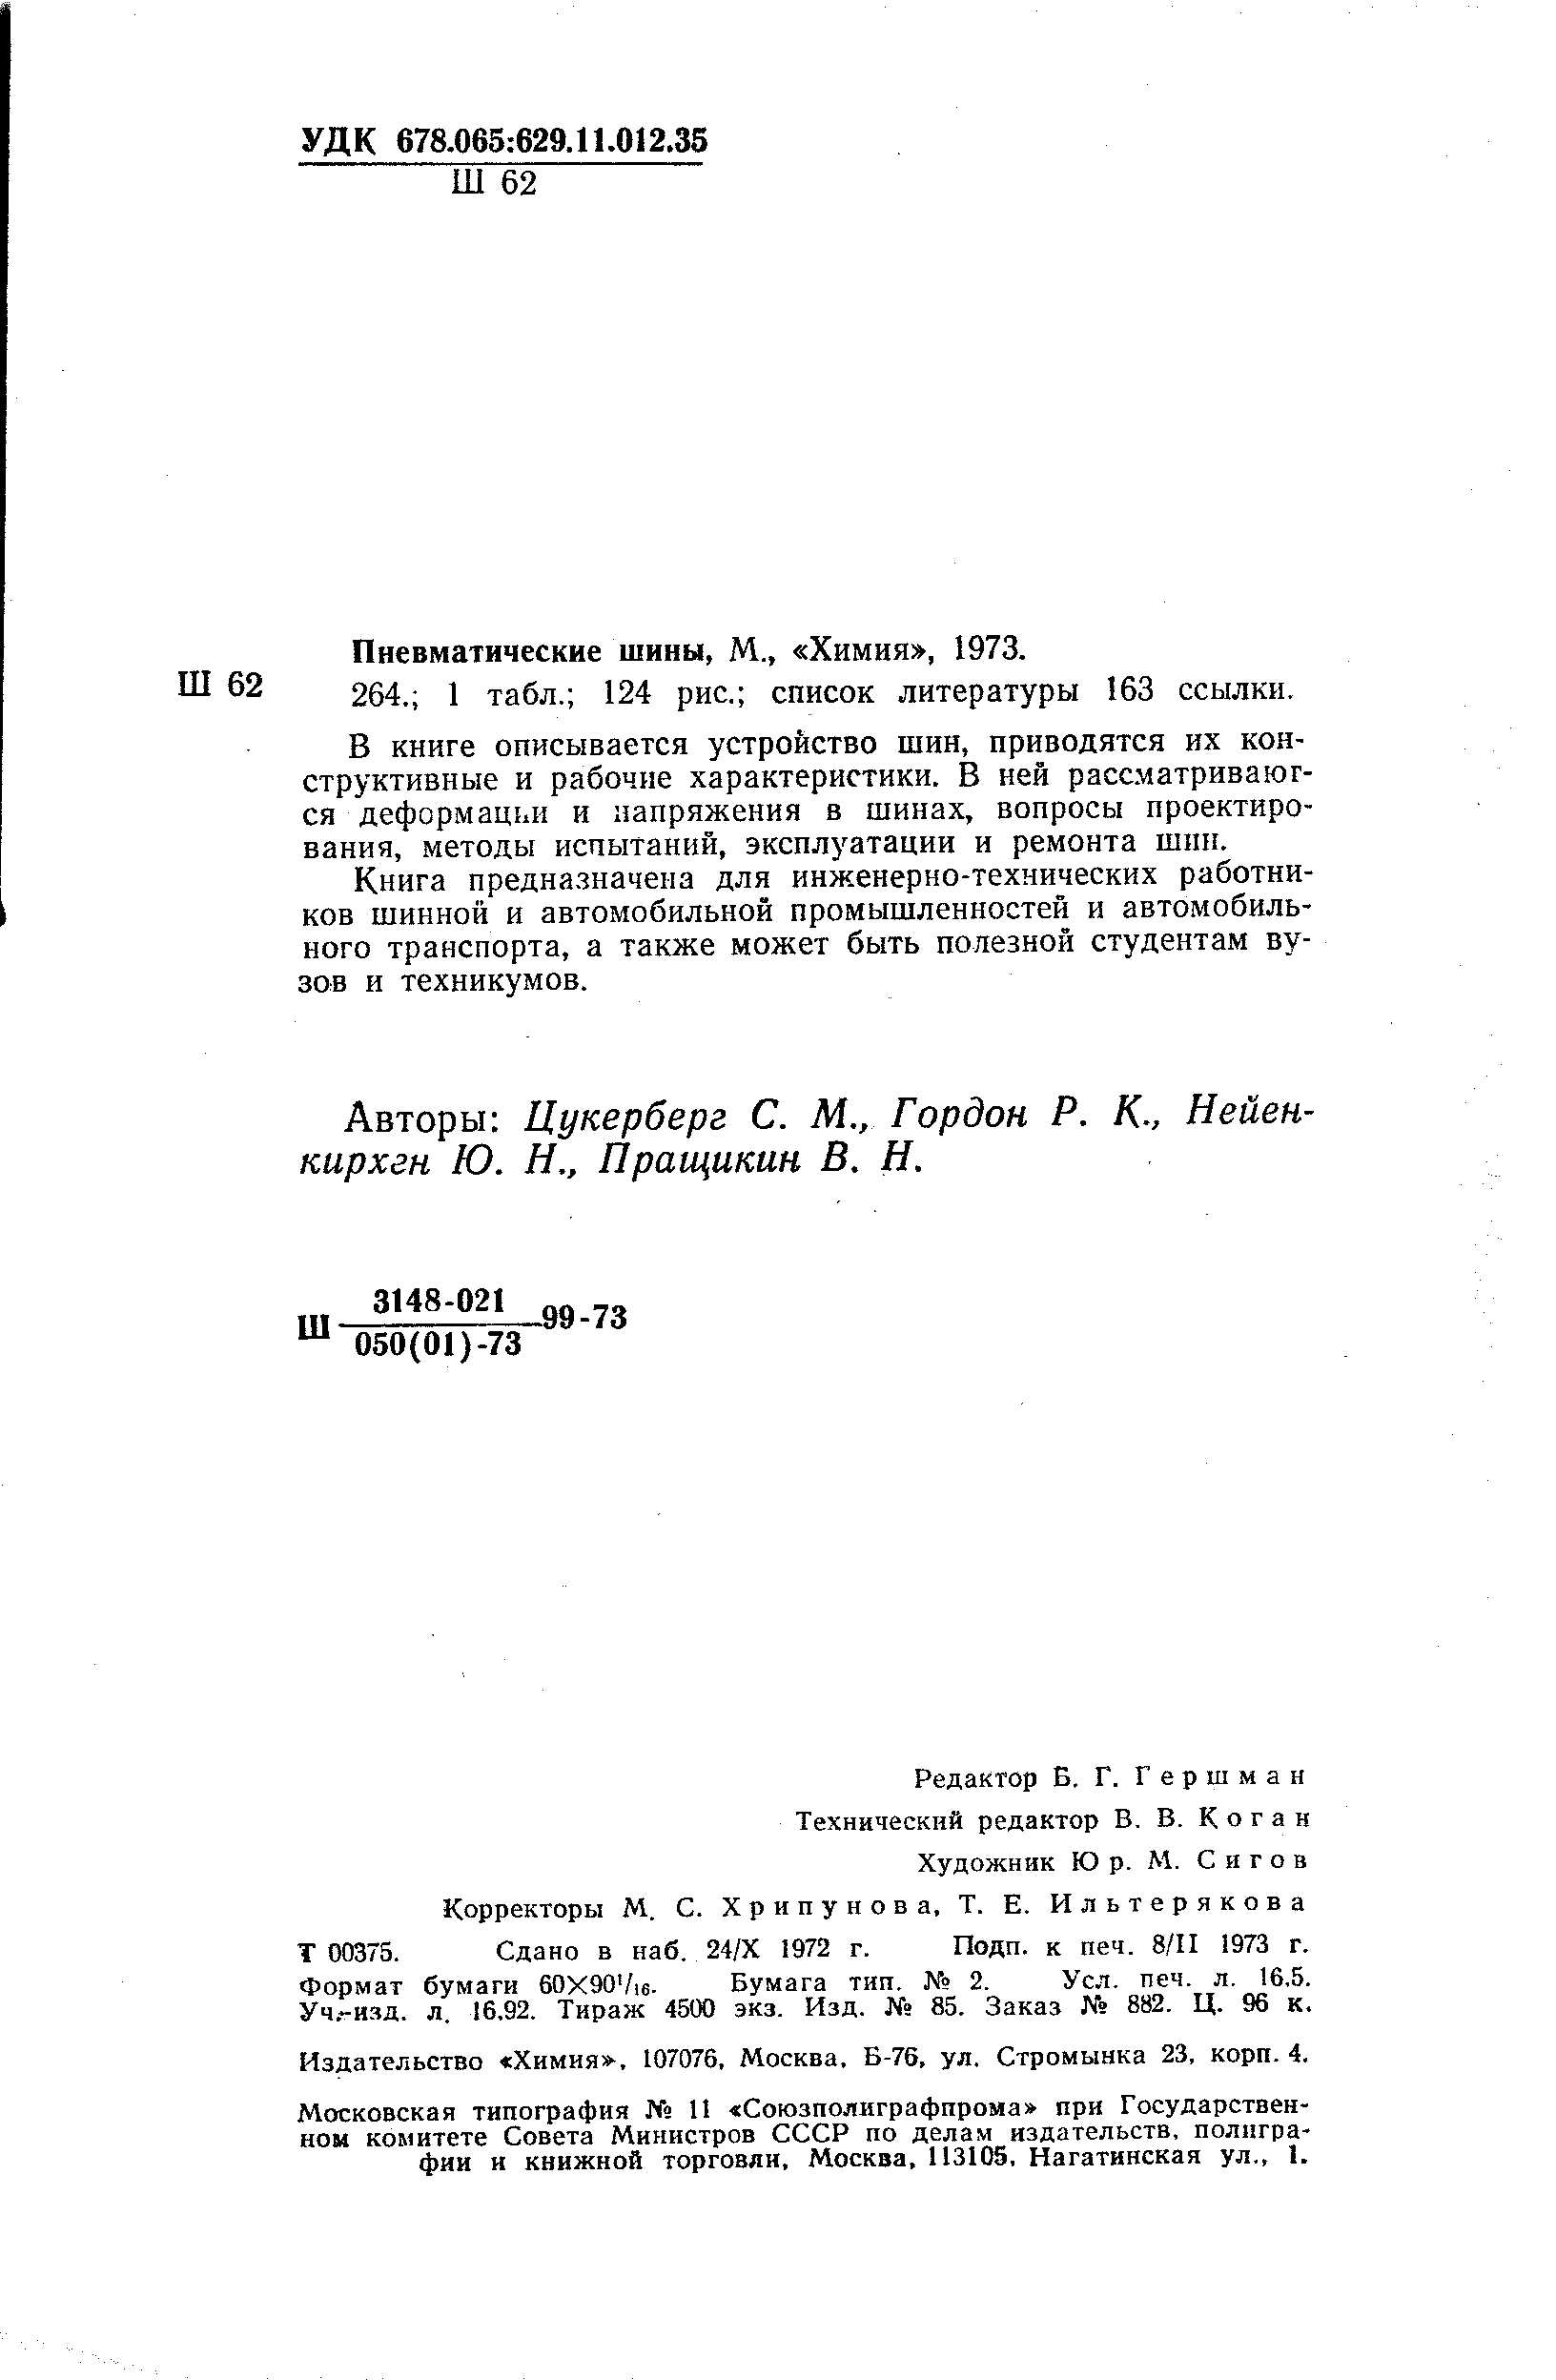 Пневматические шины, М., Химия , 1973.